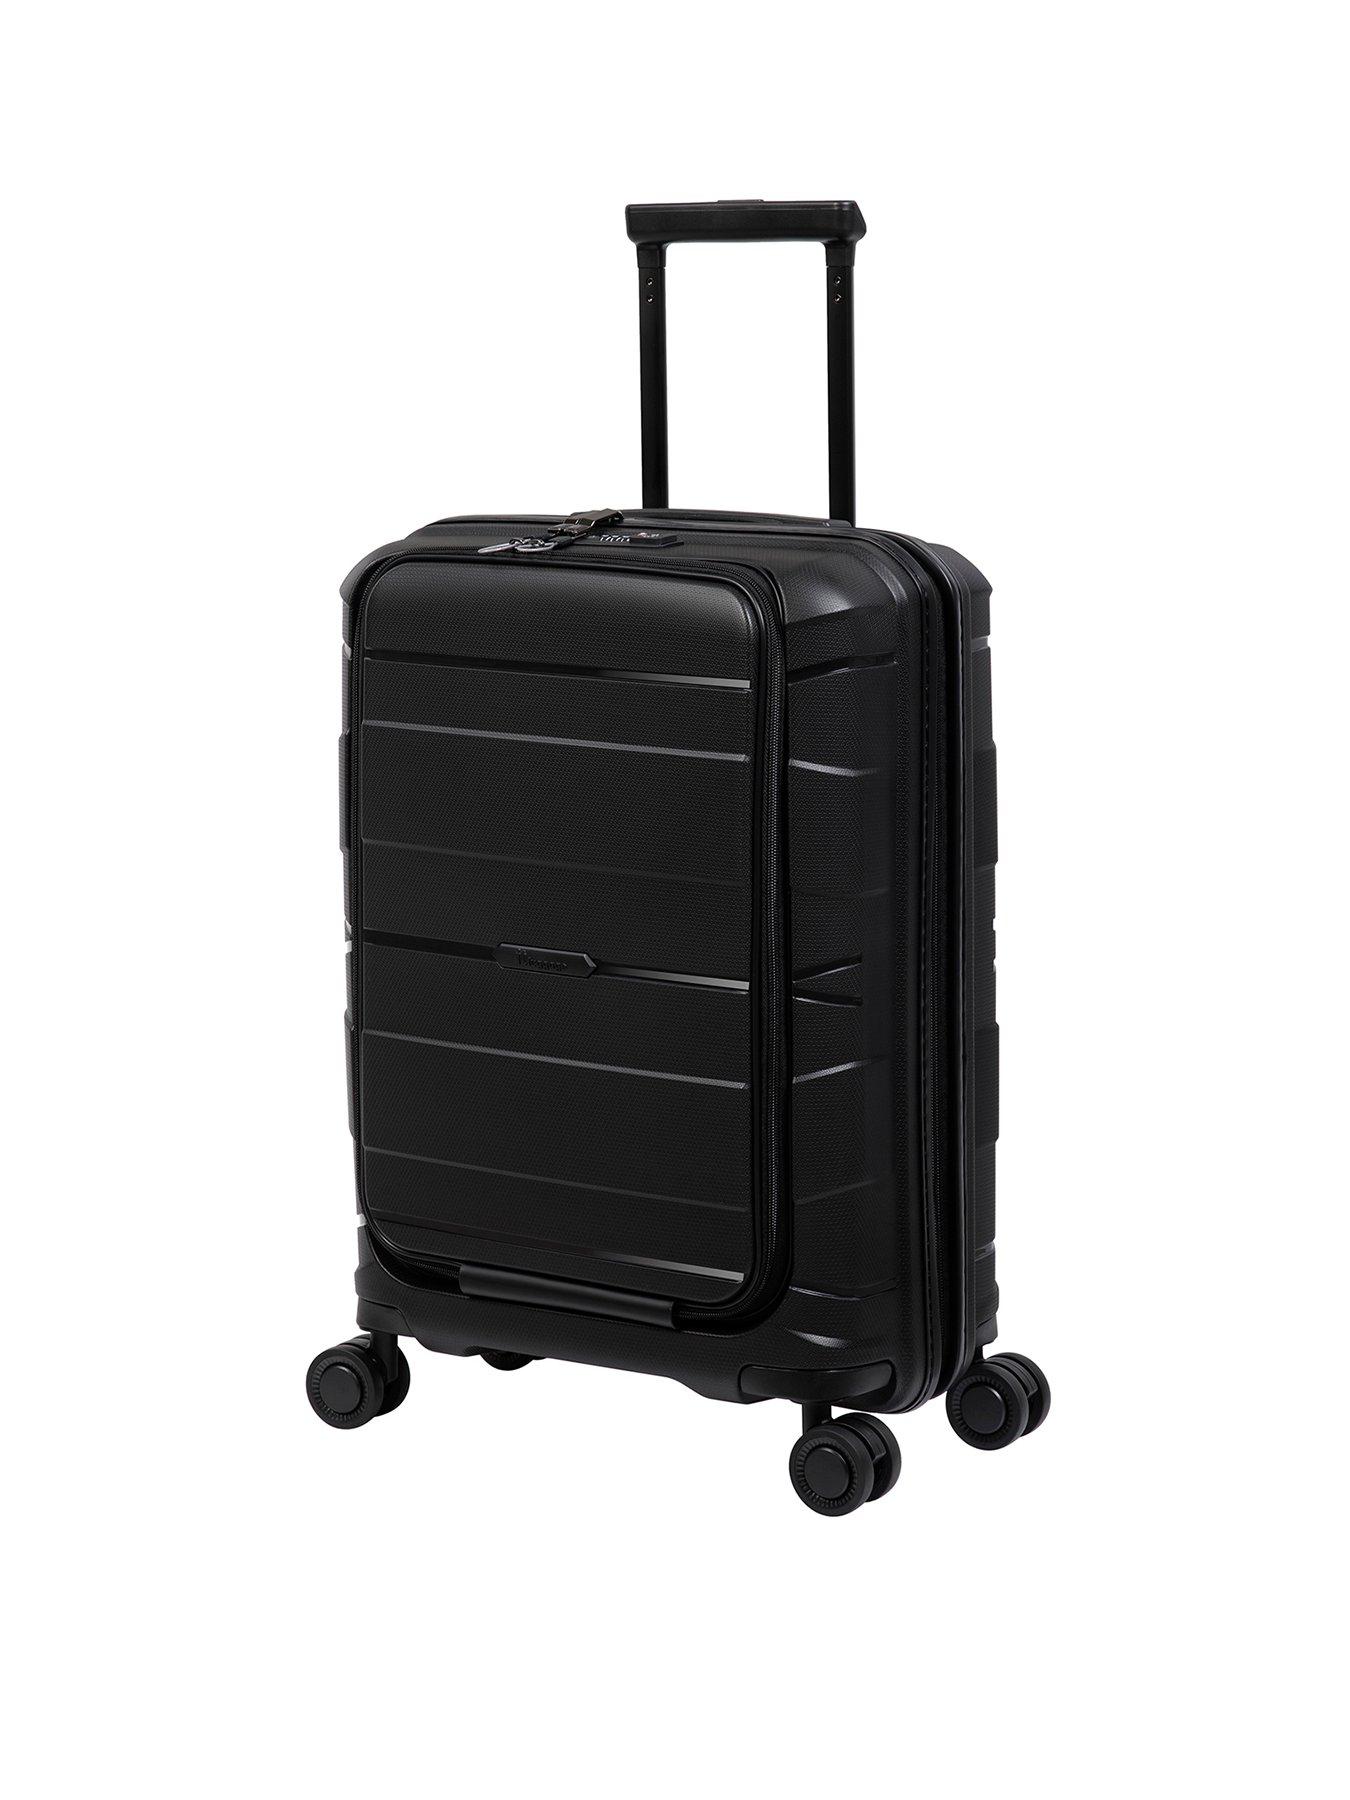 it Luggage Momentous Black Cabin Hardshell 8 Wheel Spinner Suitcase ...